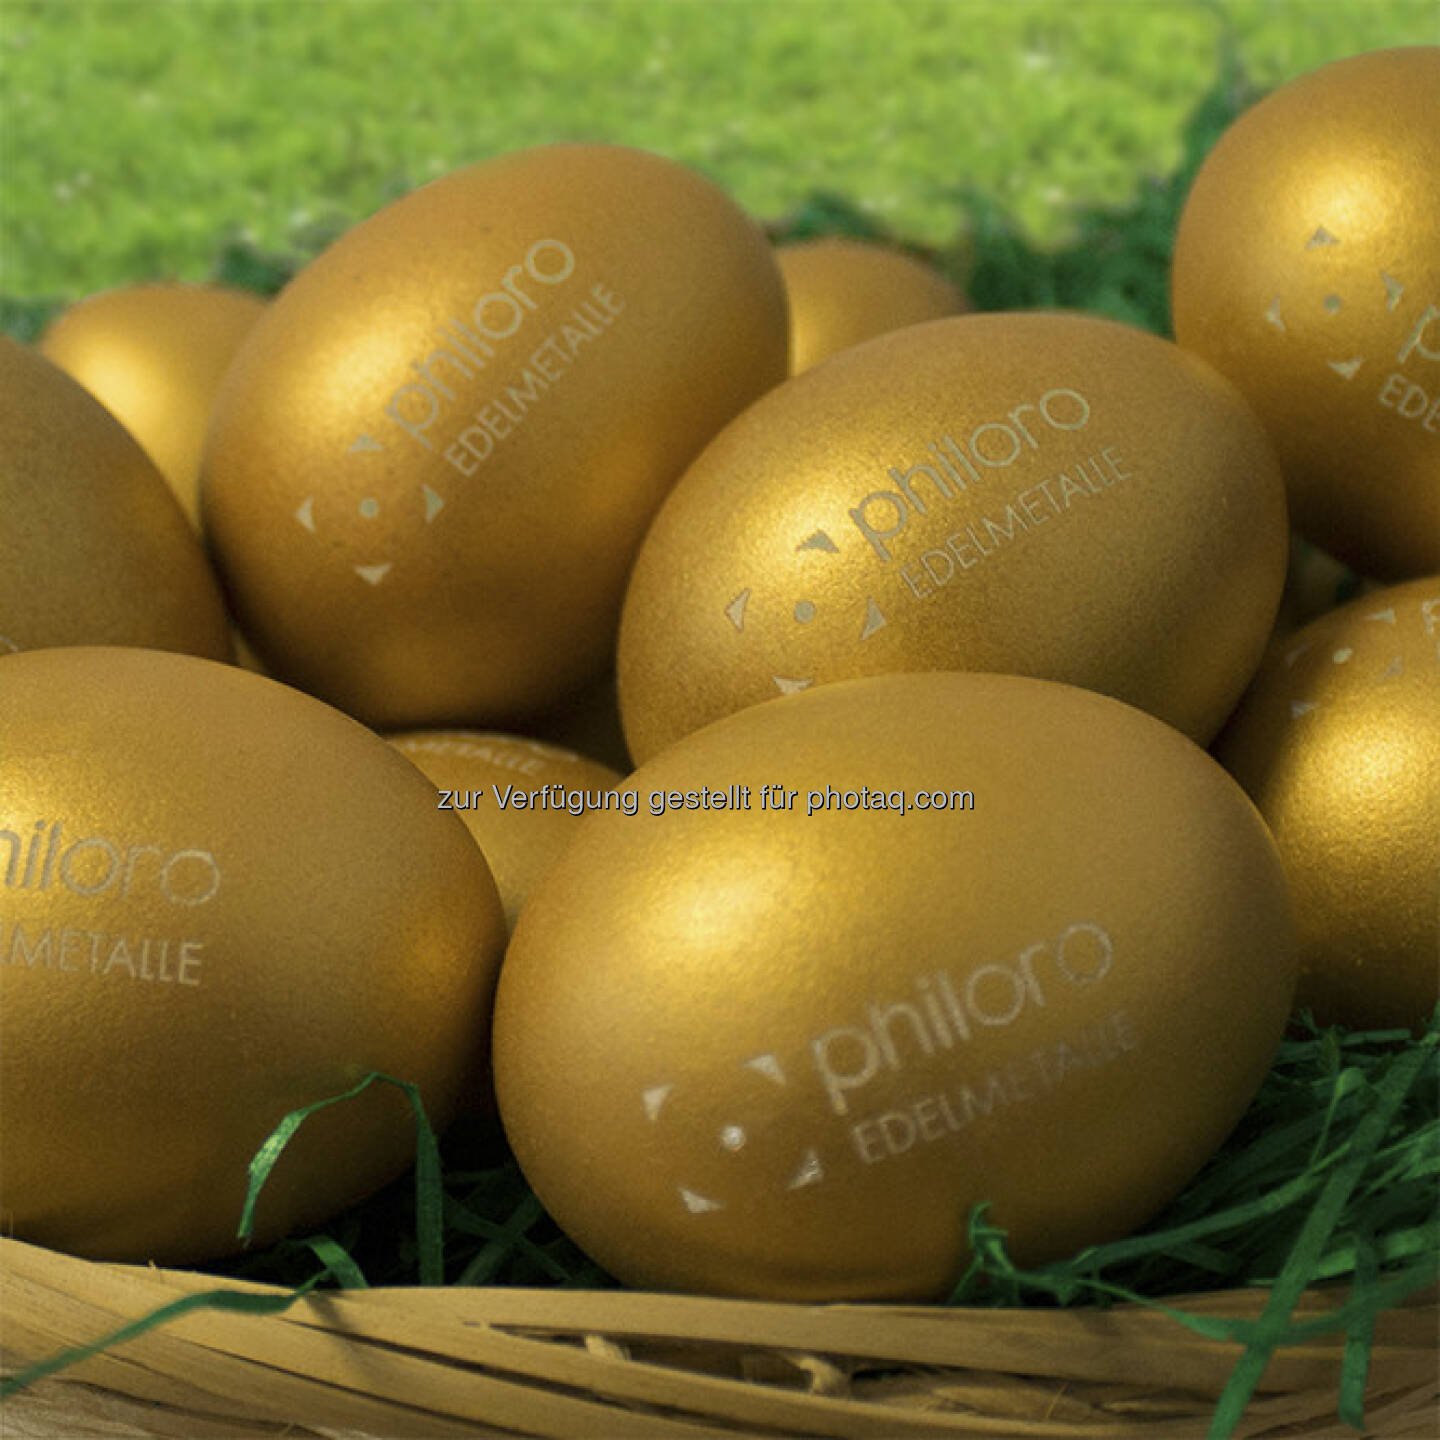 Gold, Eier: Ein Frühlings-/Osterbild von Philoro